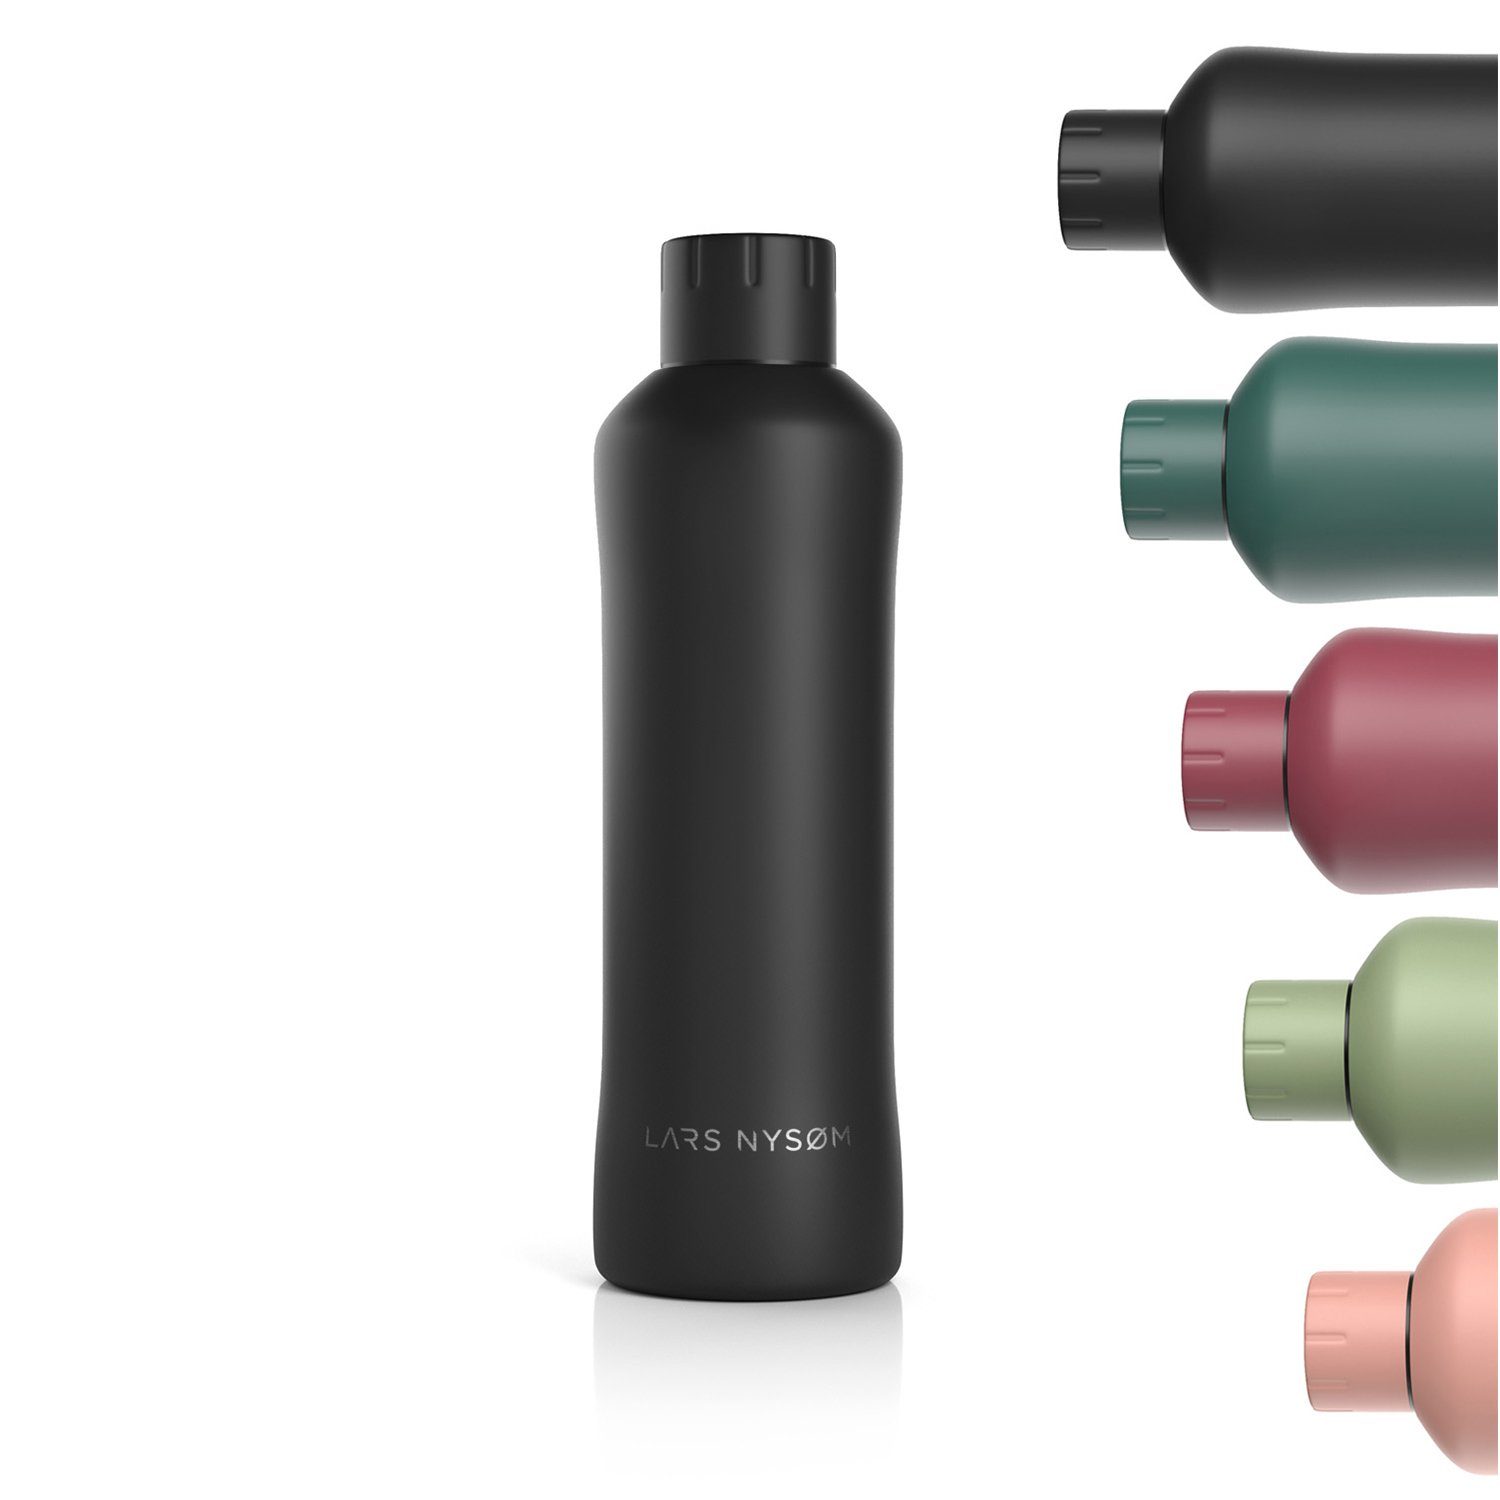 LARS NYSØM Isolierflasche Bølge, BPA-Freie Thermosflasche Kohlensäure geeignet Onyx Black